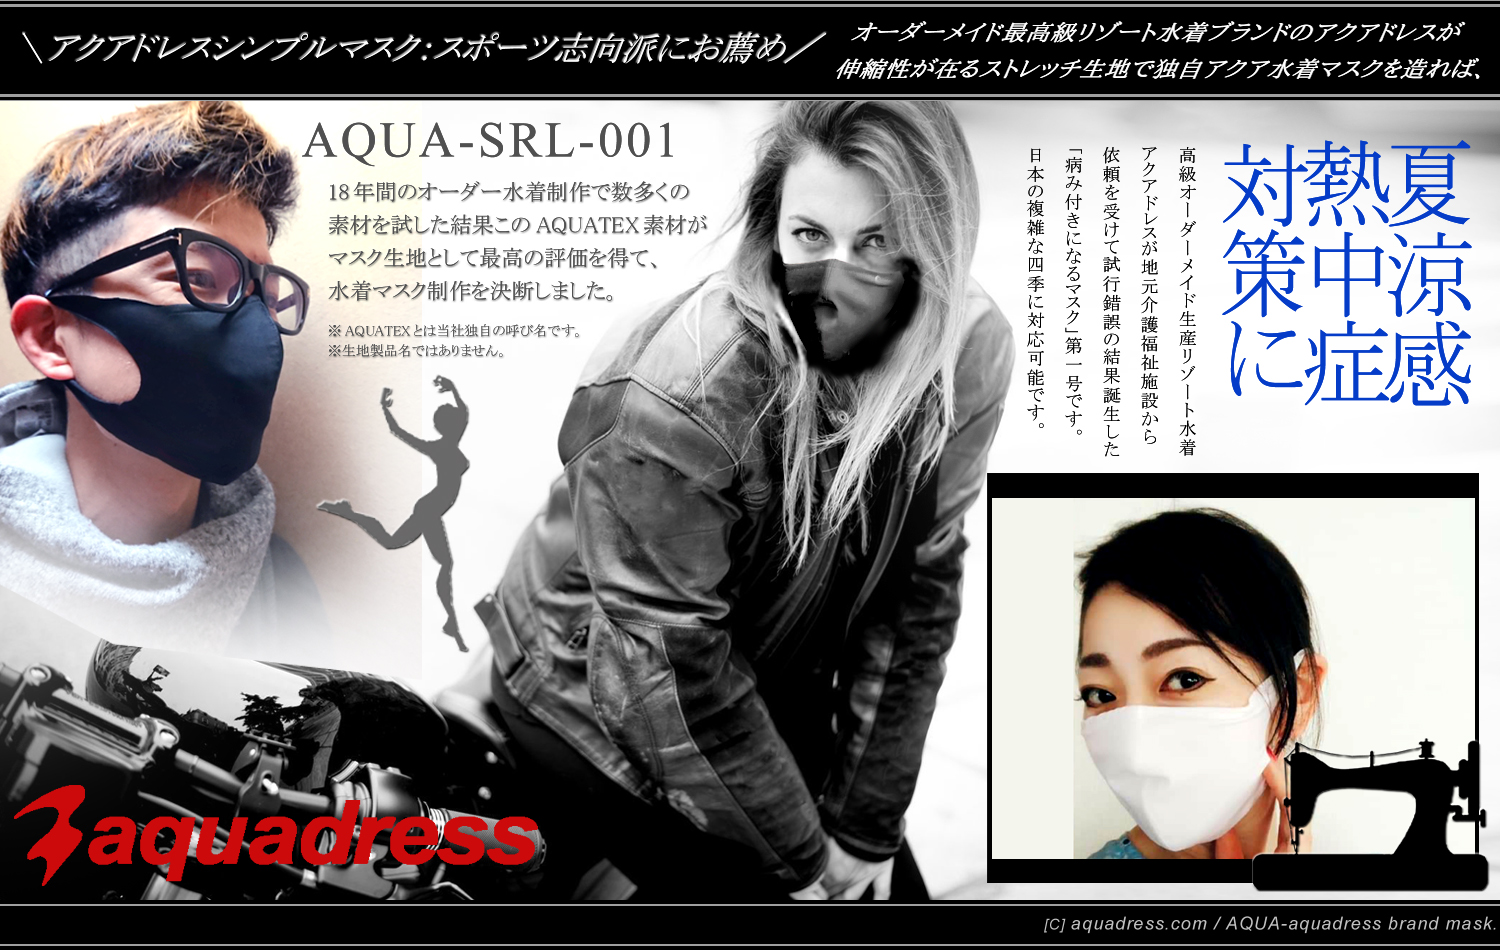 ＼AQUA水着スポーツマスク／このSRL-001マスク開発から歴史が動いた！＝高機能性マスク